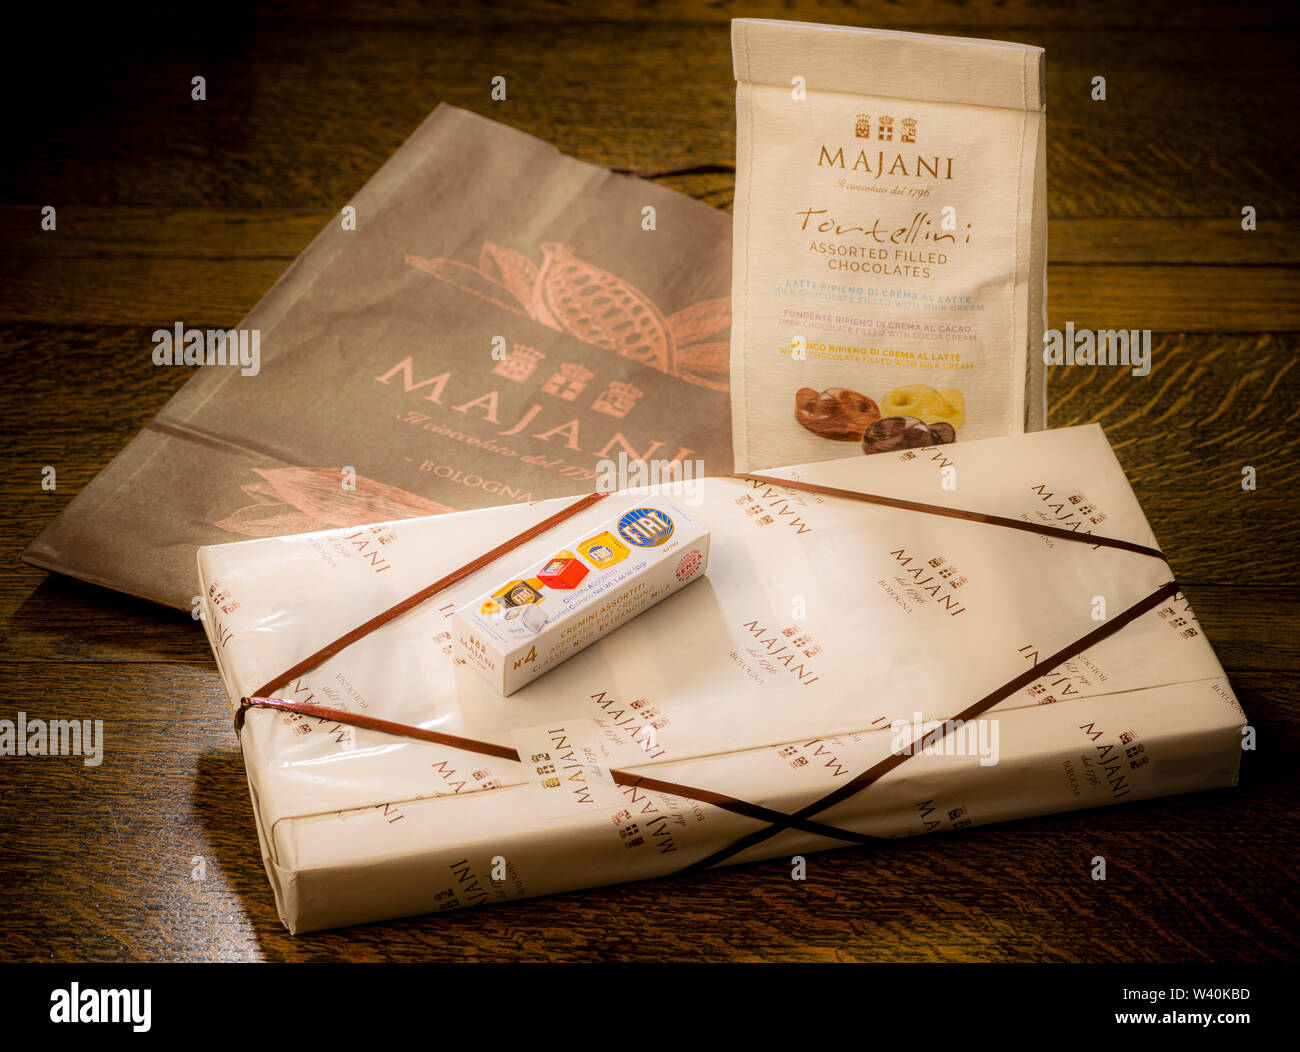 Auswahl an Geschenk verpackt Pralinen aus Majani chocolatiers, Bologna, Italien. Stockfoto